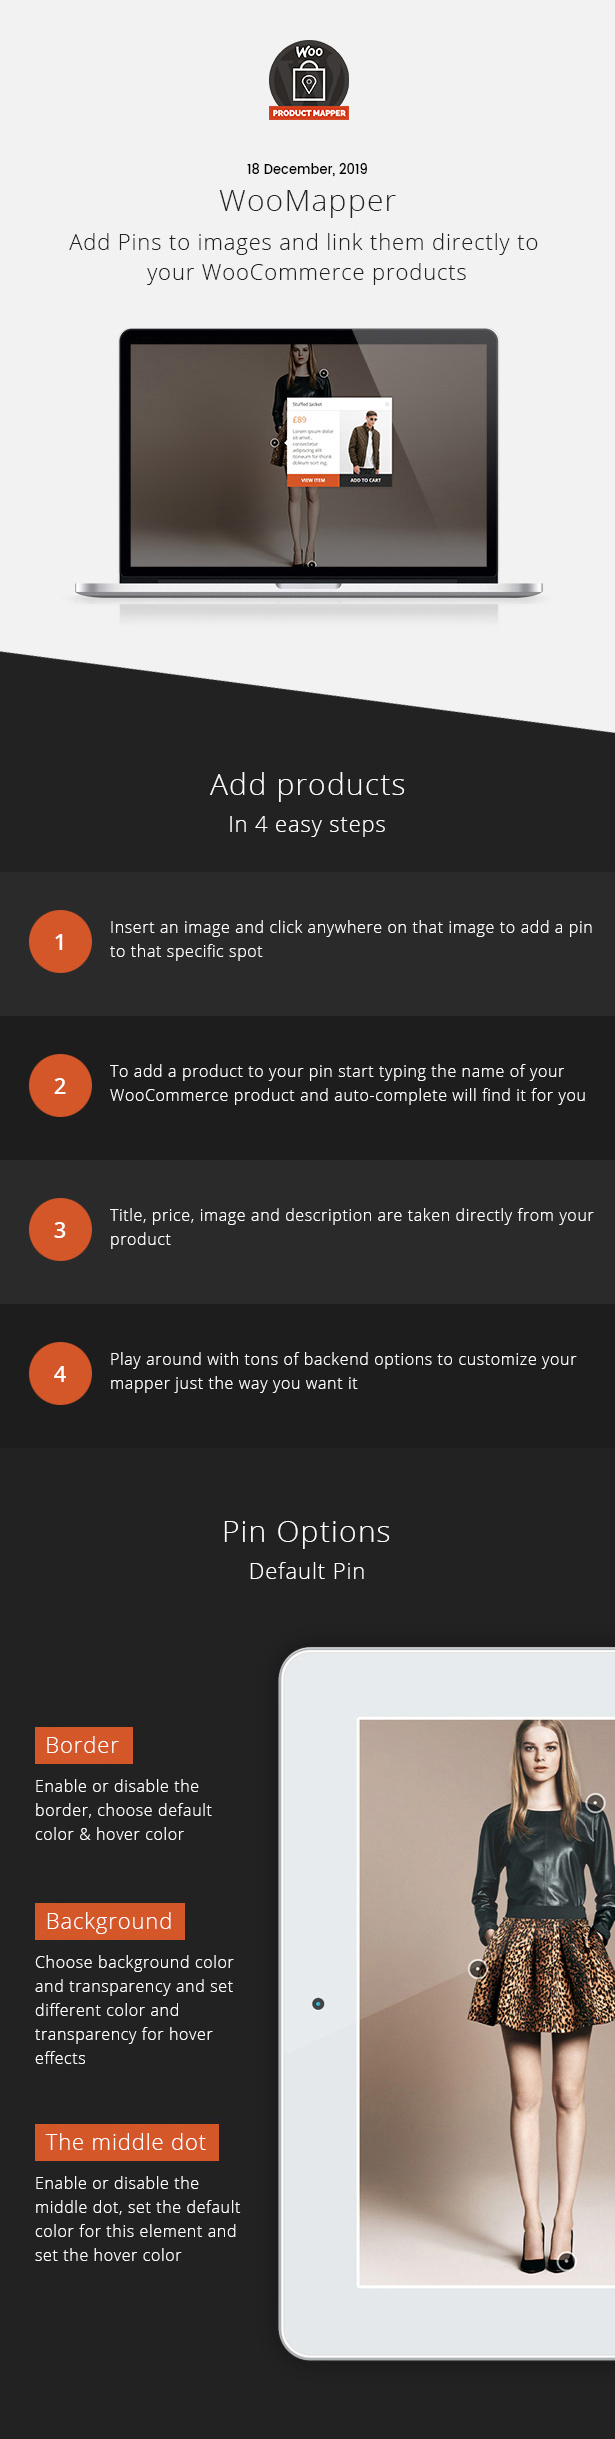 WooMapper - WordPress Hotspot Plugin, Mostrar productos WooCommerce, Agregar pines a las imágenes - 1